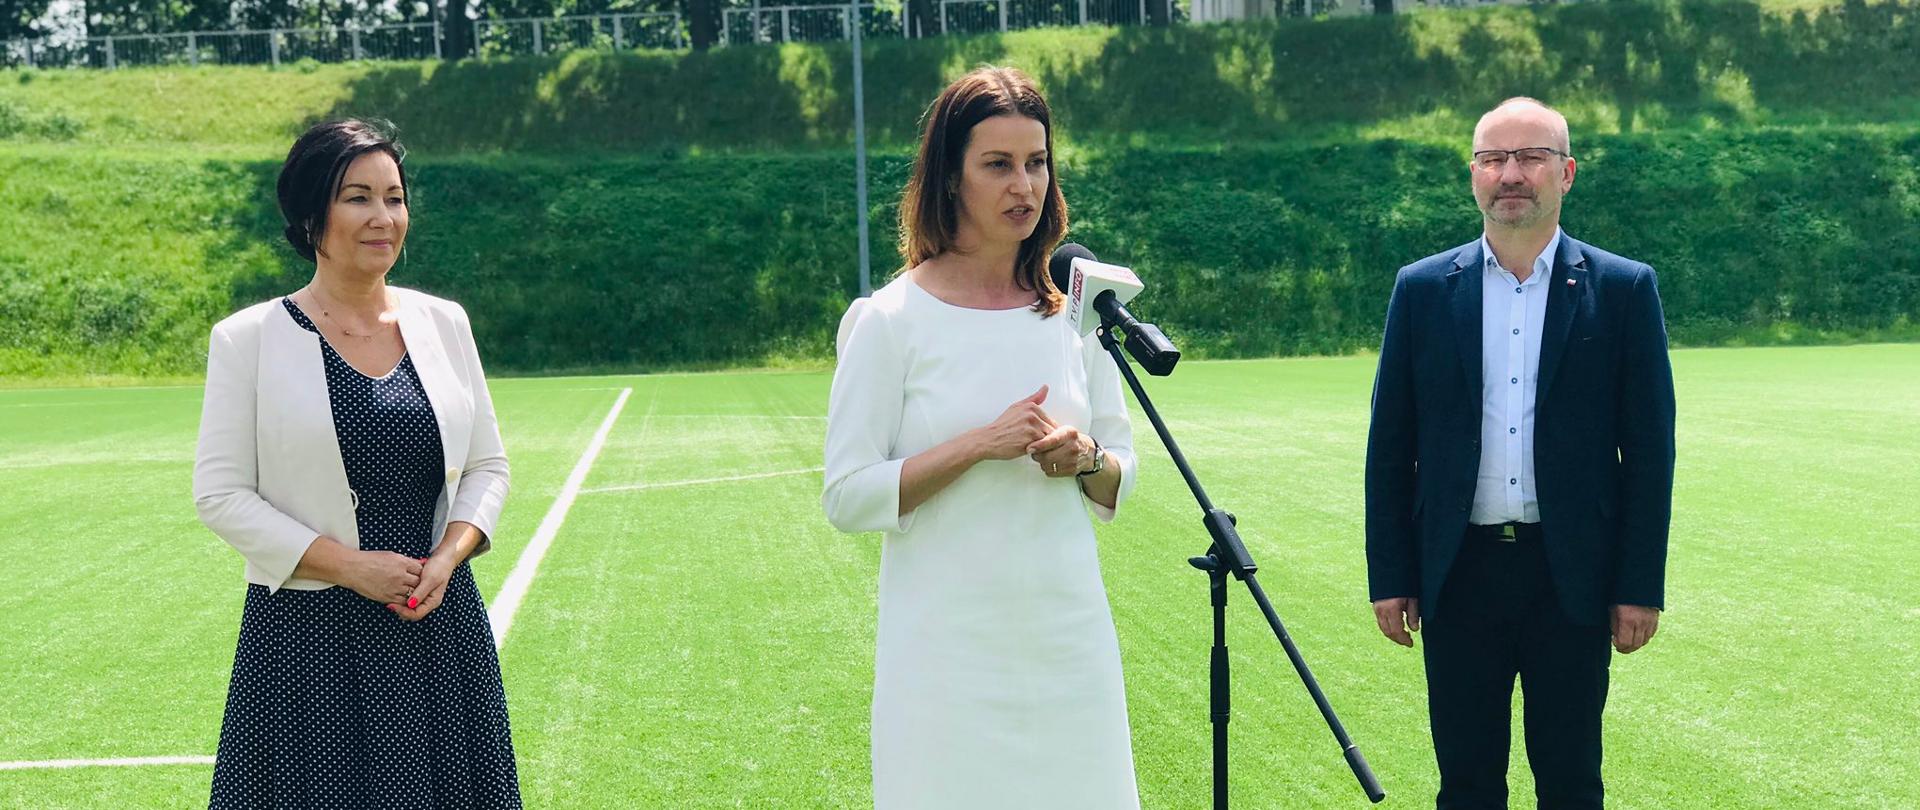 Danuta Dmowska-Andrzejuk przemawia do mikrofonu na boisku piłkarskim.